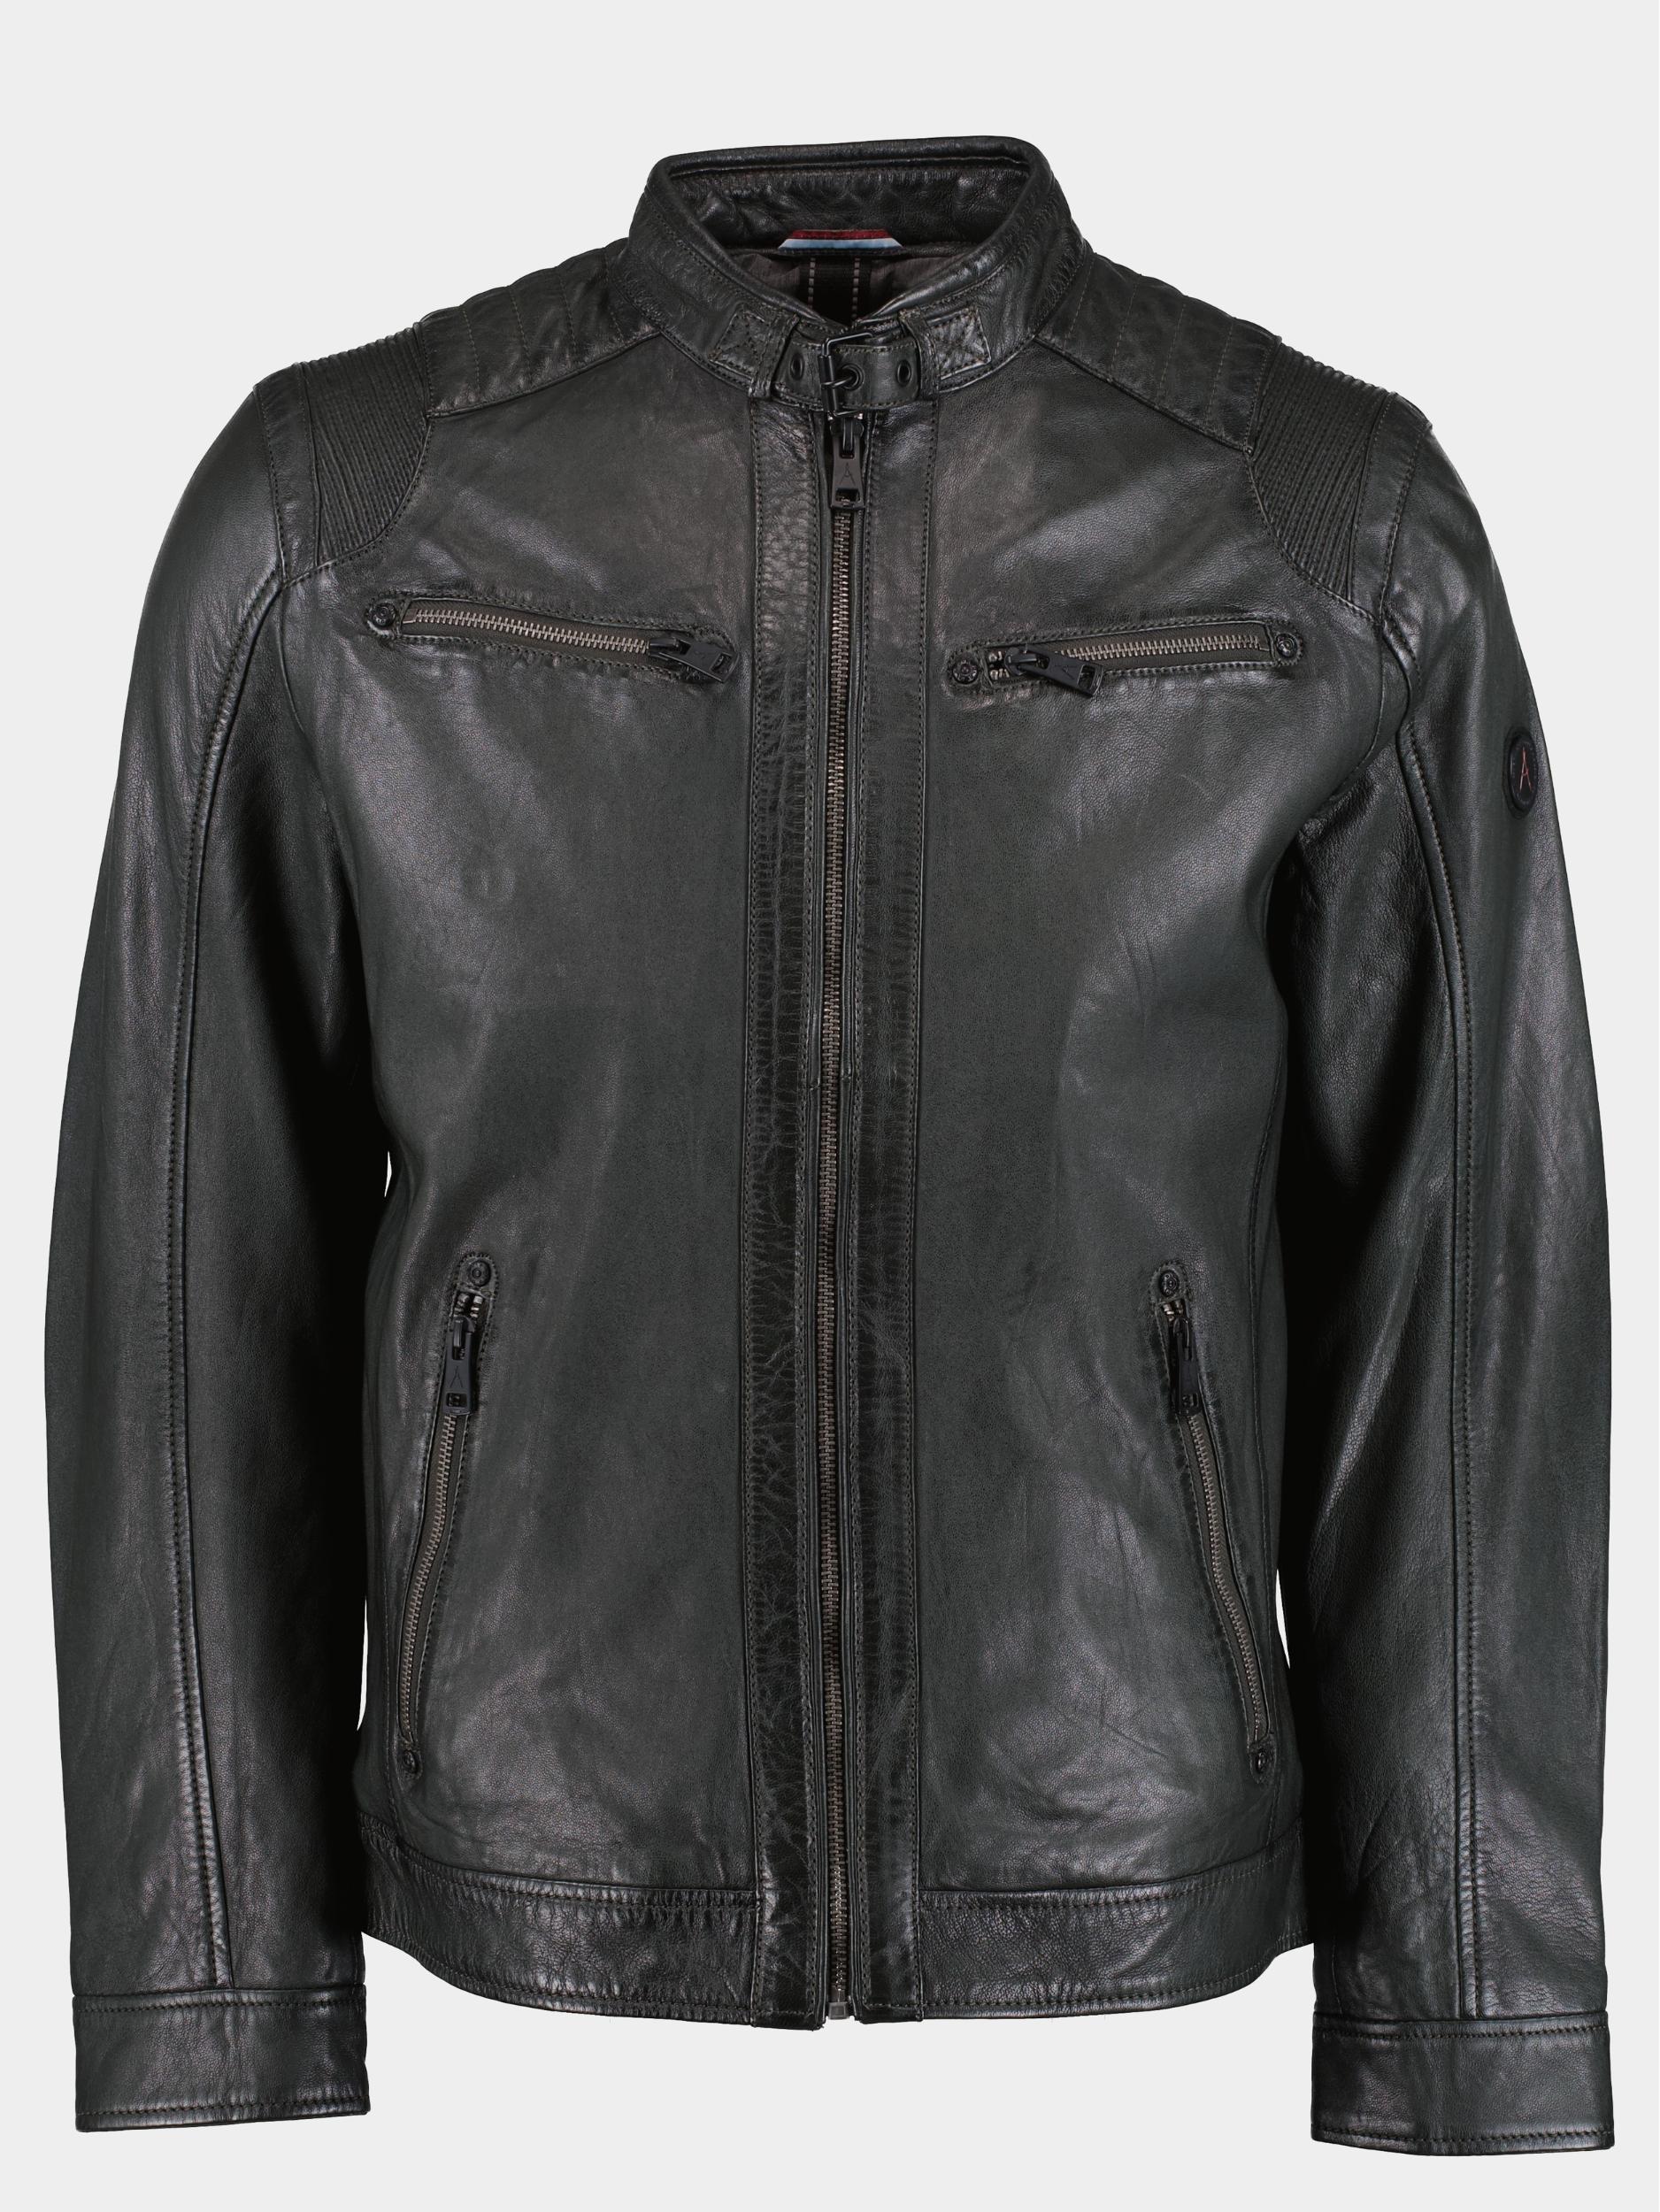 Afbeelding van DNR Lederen jack beige leather jacket 394/6